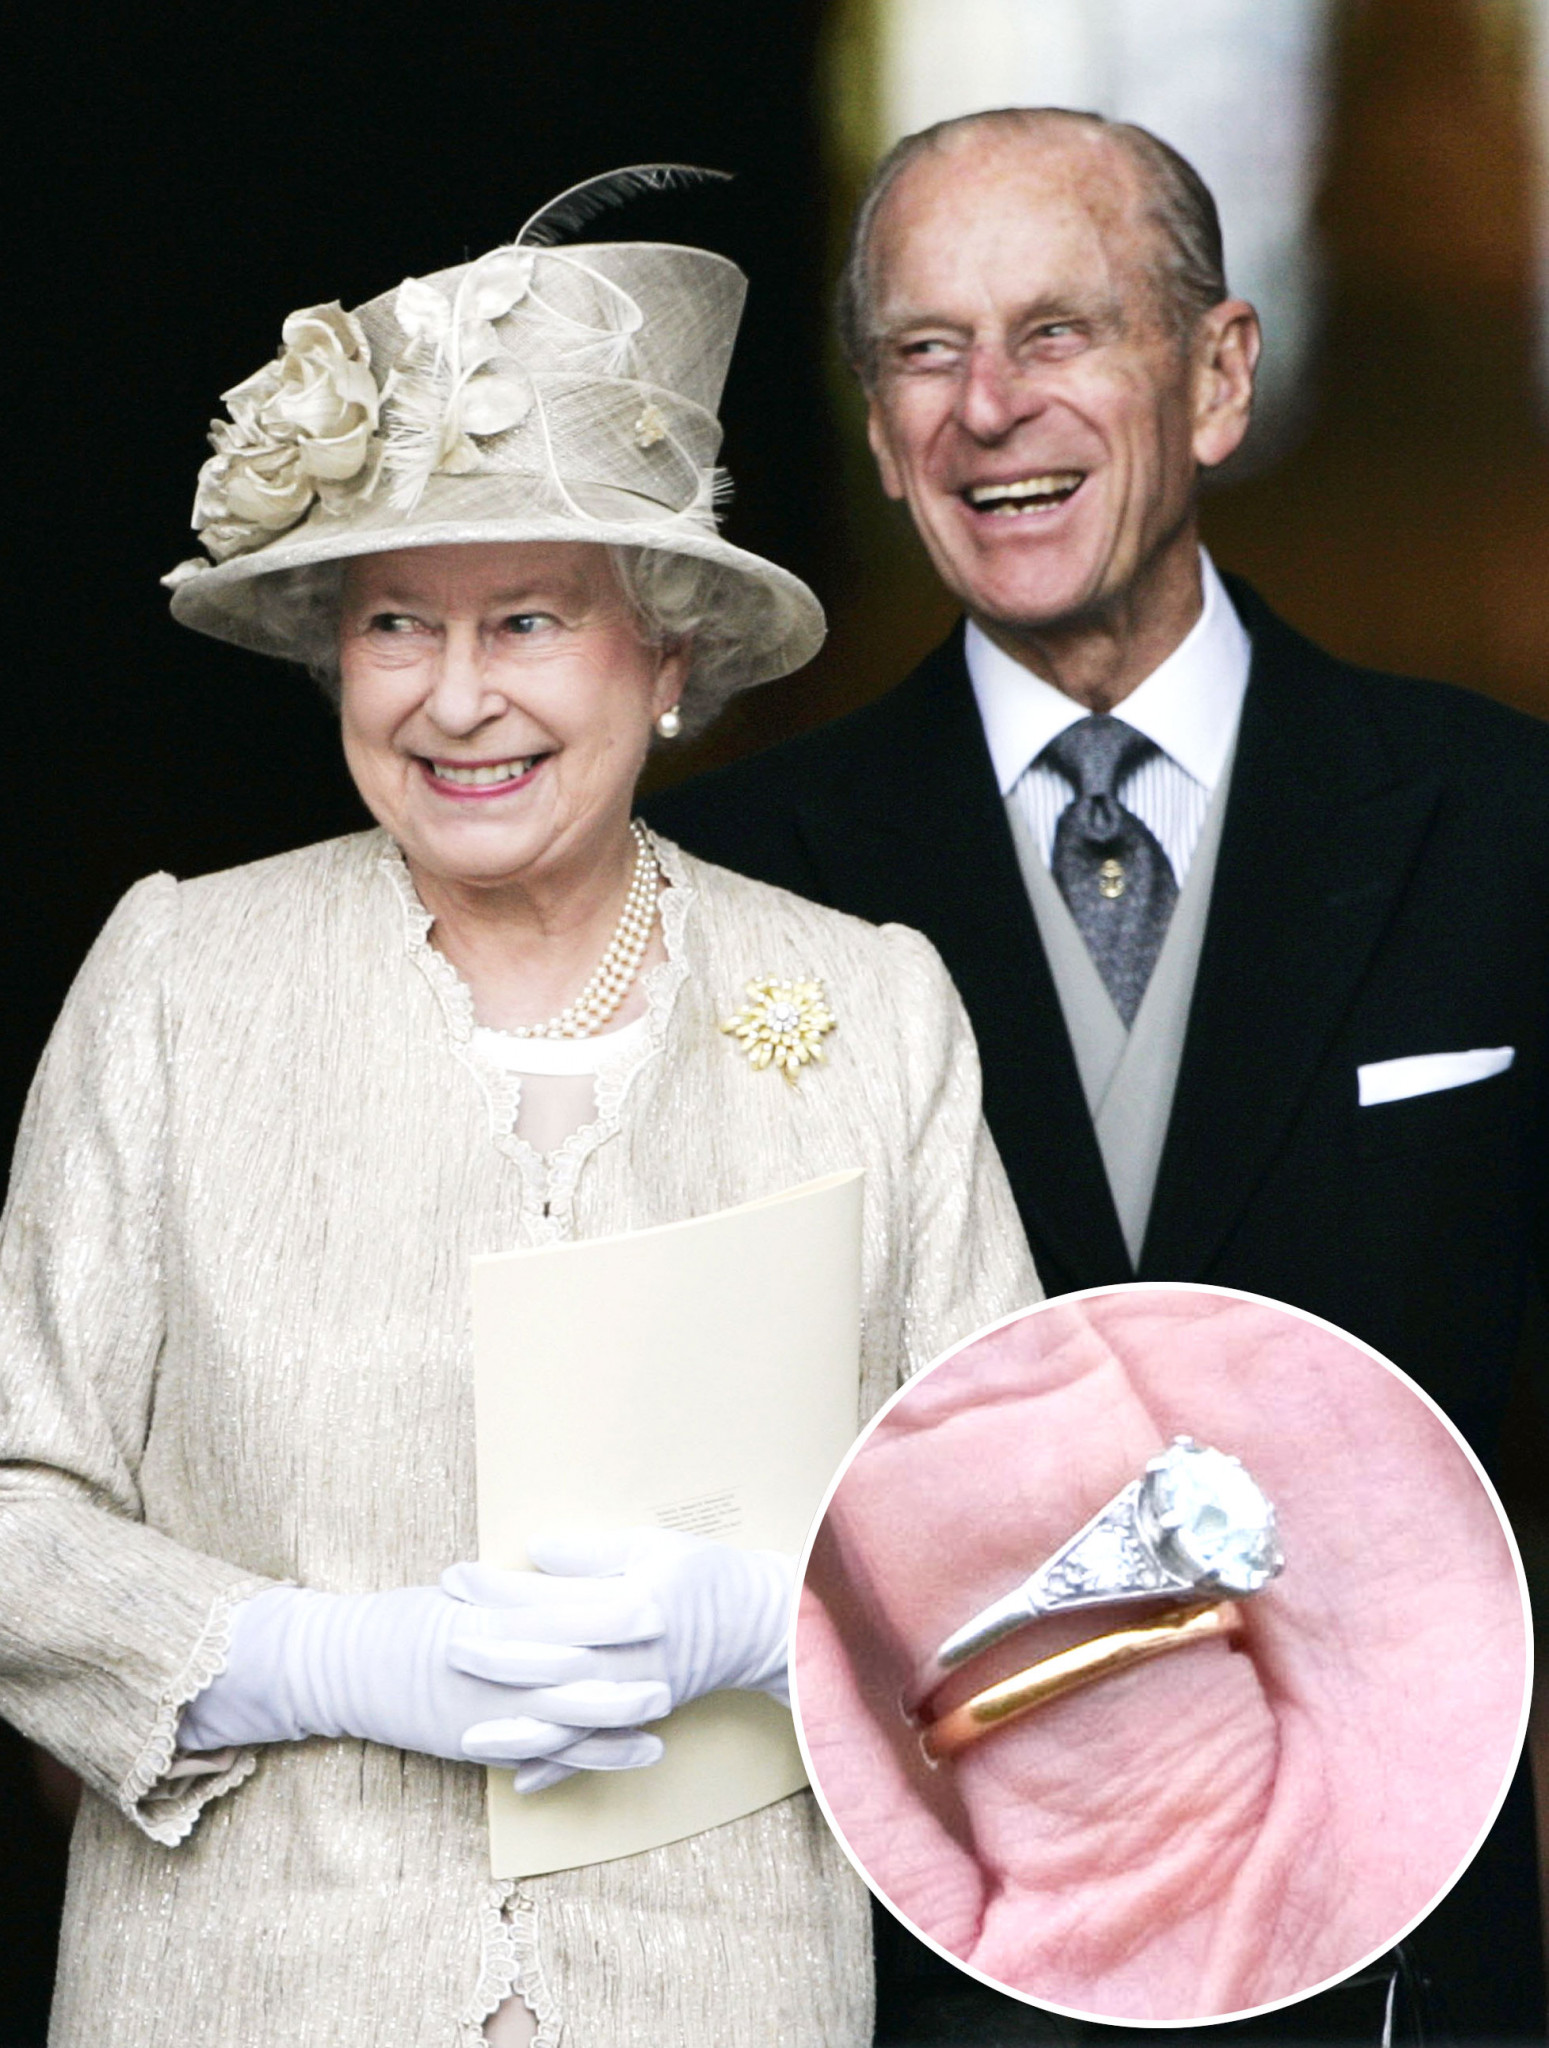 Nedávny dokument televízie BBC o jej veličenstve odhalil prekvapujúce zistenie. Britská panovníčka nemá záľubu v šperkoch a drahých klenotoch. Jediné šperky, pre ktoré má slabosť sú brošne a jej zásnubný prsteň. Dominantu platinového šperku tvorí 3-karátový diamant, okolo ktorého je osadených päť menších diamantov. Zaujímavosťou je, že ho Princ Philip, Vojvoda z Edinburghu navrhol sám a diamanty pochádzajú z koruny jeho matky, Princeznej Alice z Grécka. Odhadovaná hodnota zásnubného prsteňa jej veličenstva by sa podľa odborníkov mohla vyšplhať na 200-tisíc libier (približne 225-tisíc eur). „Číre diamanty v zásnubných prsteňoch sú stále tými najobľúbenejšími aj medzi Slovákmi a Čechmi. Táto klasická kombinácia farieb a kameňov nikdy nevyjde z módy,“ hovorí Alojz Ryšavý, klenotník.